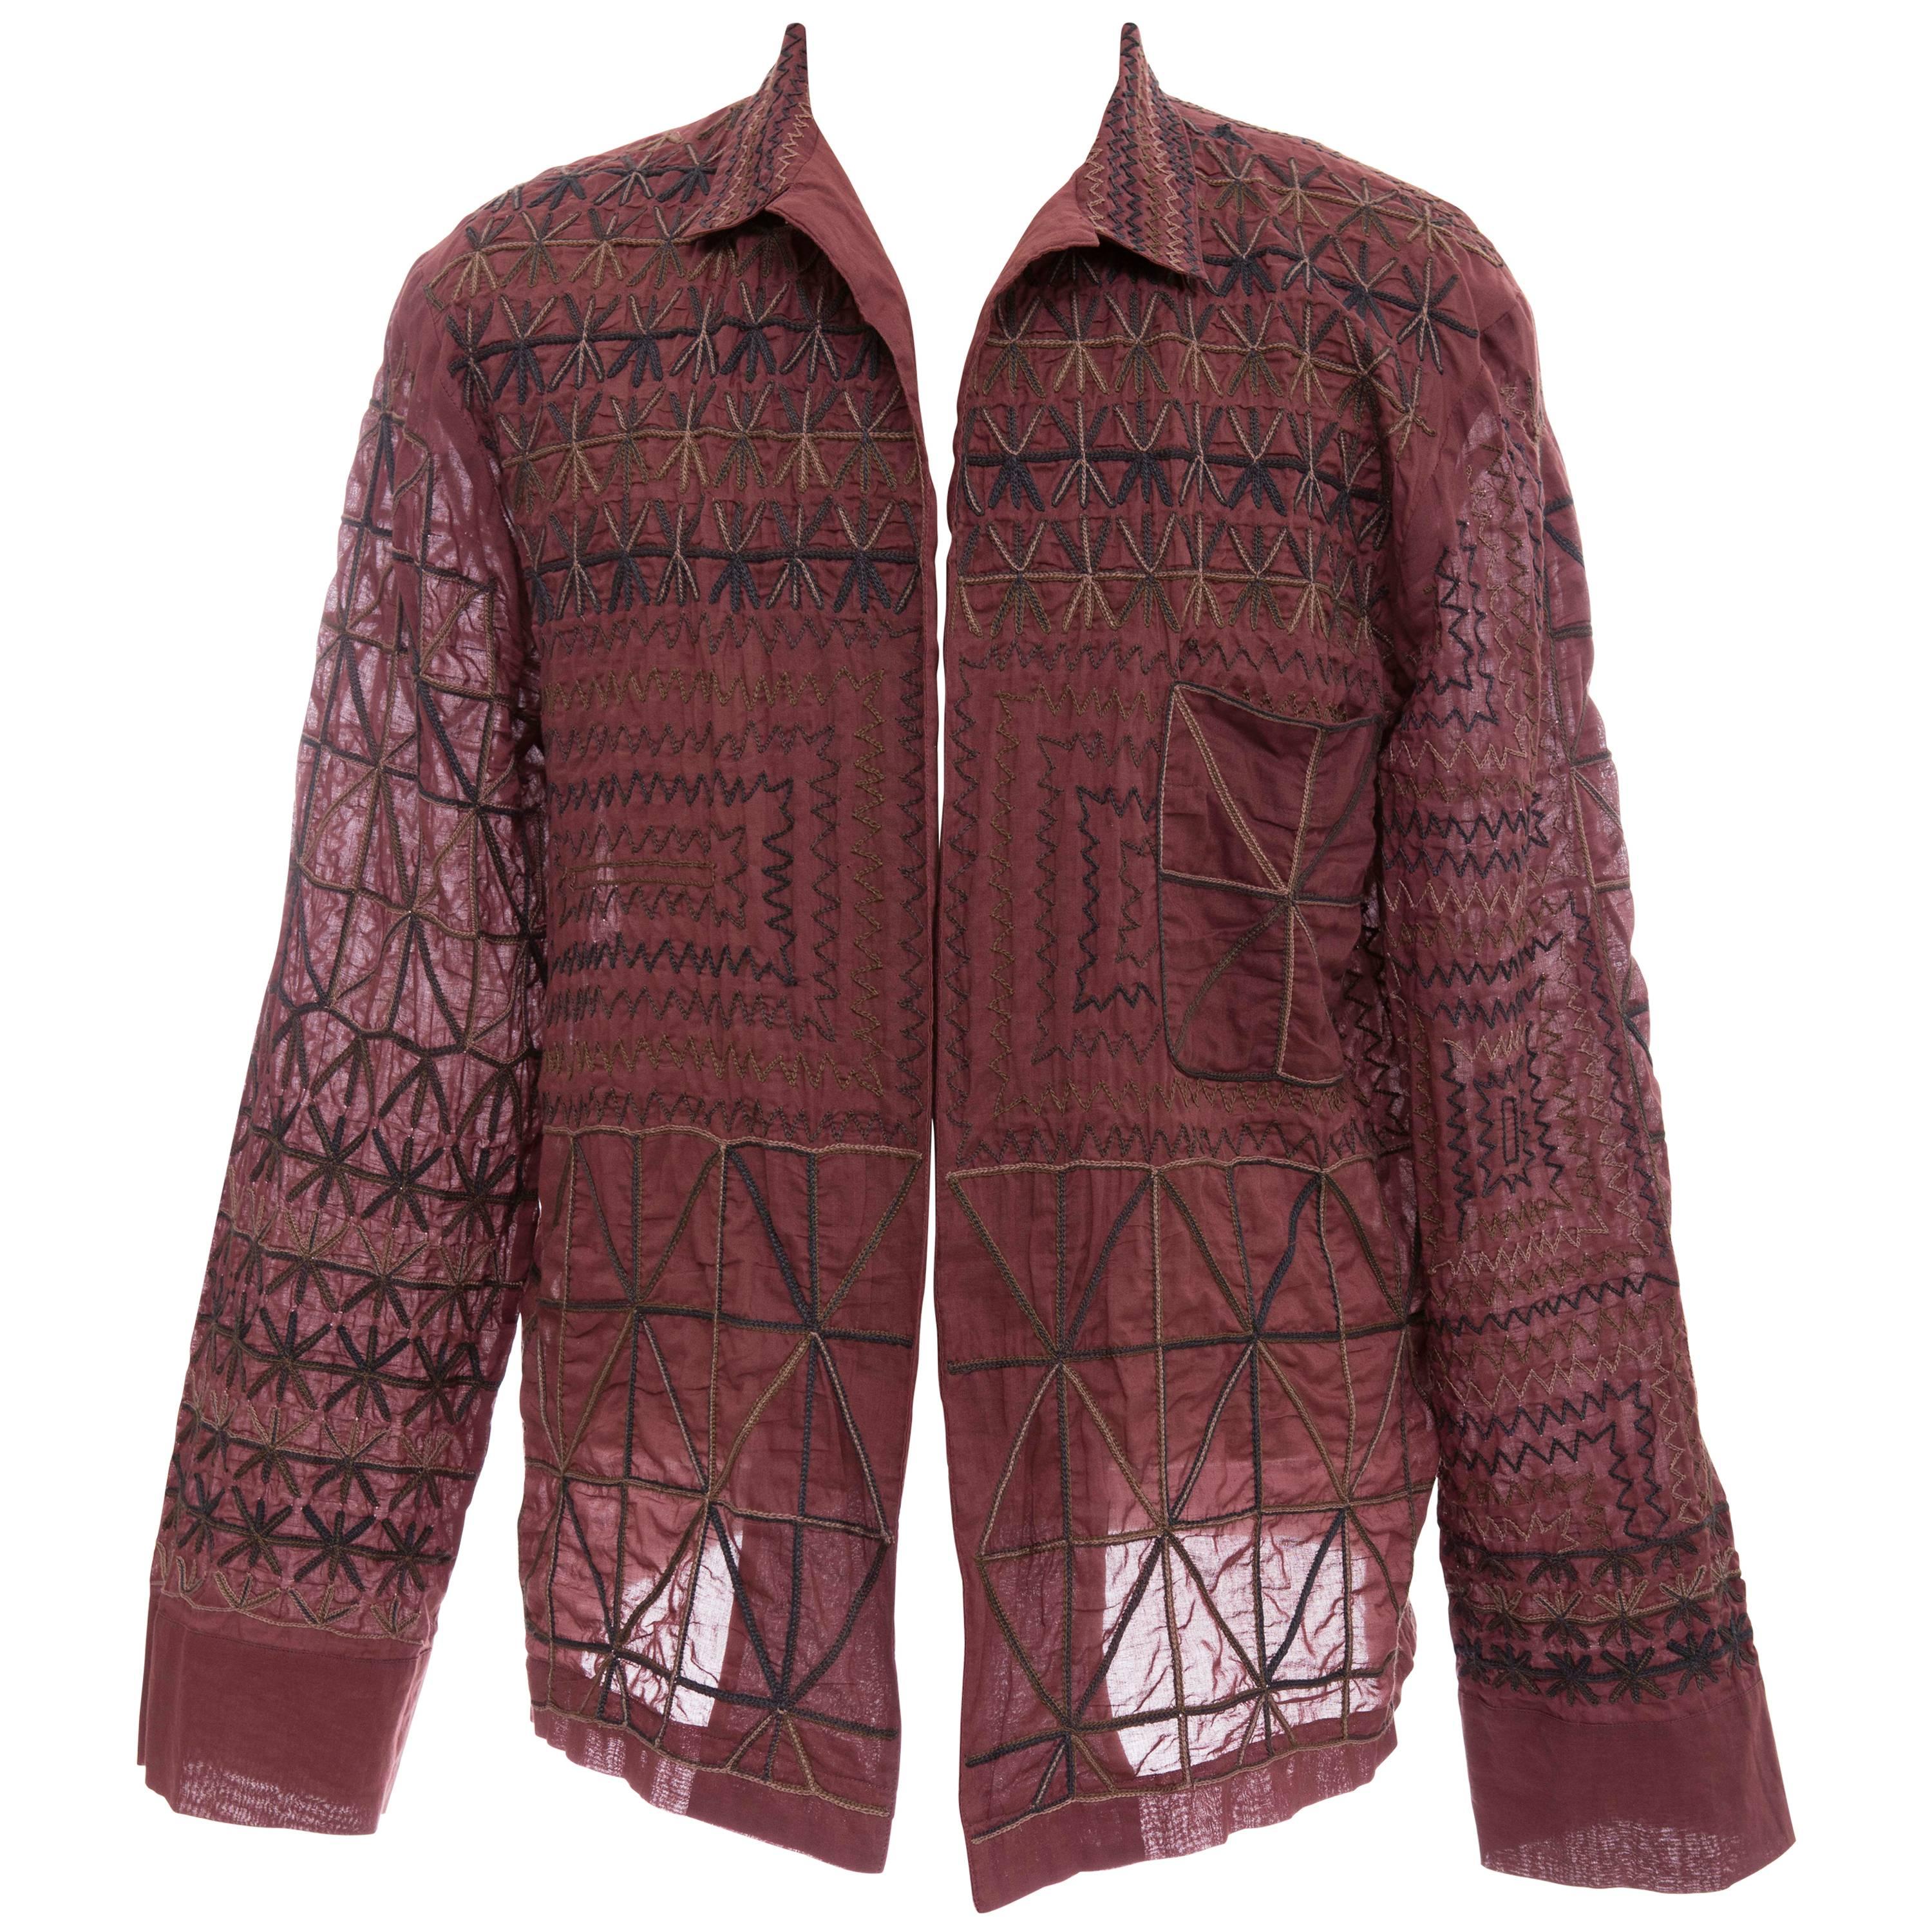 Dries Van Noten Men's Embroidered Cotton Lightweight Jacket, Spring 2015 